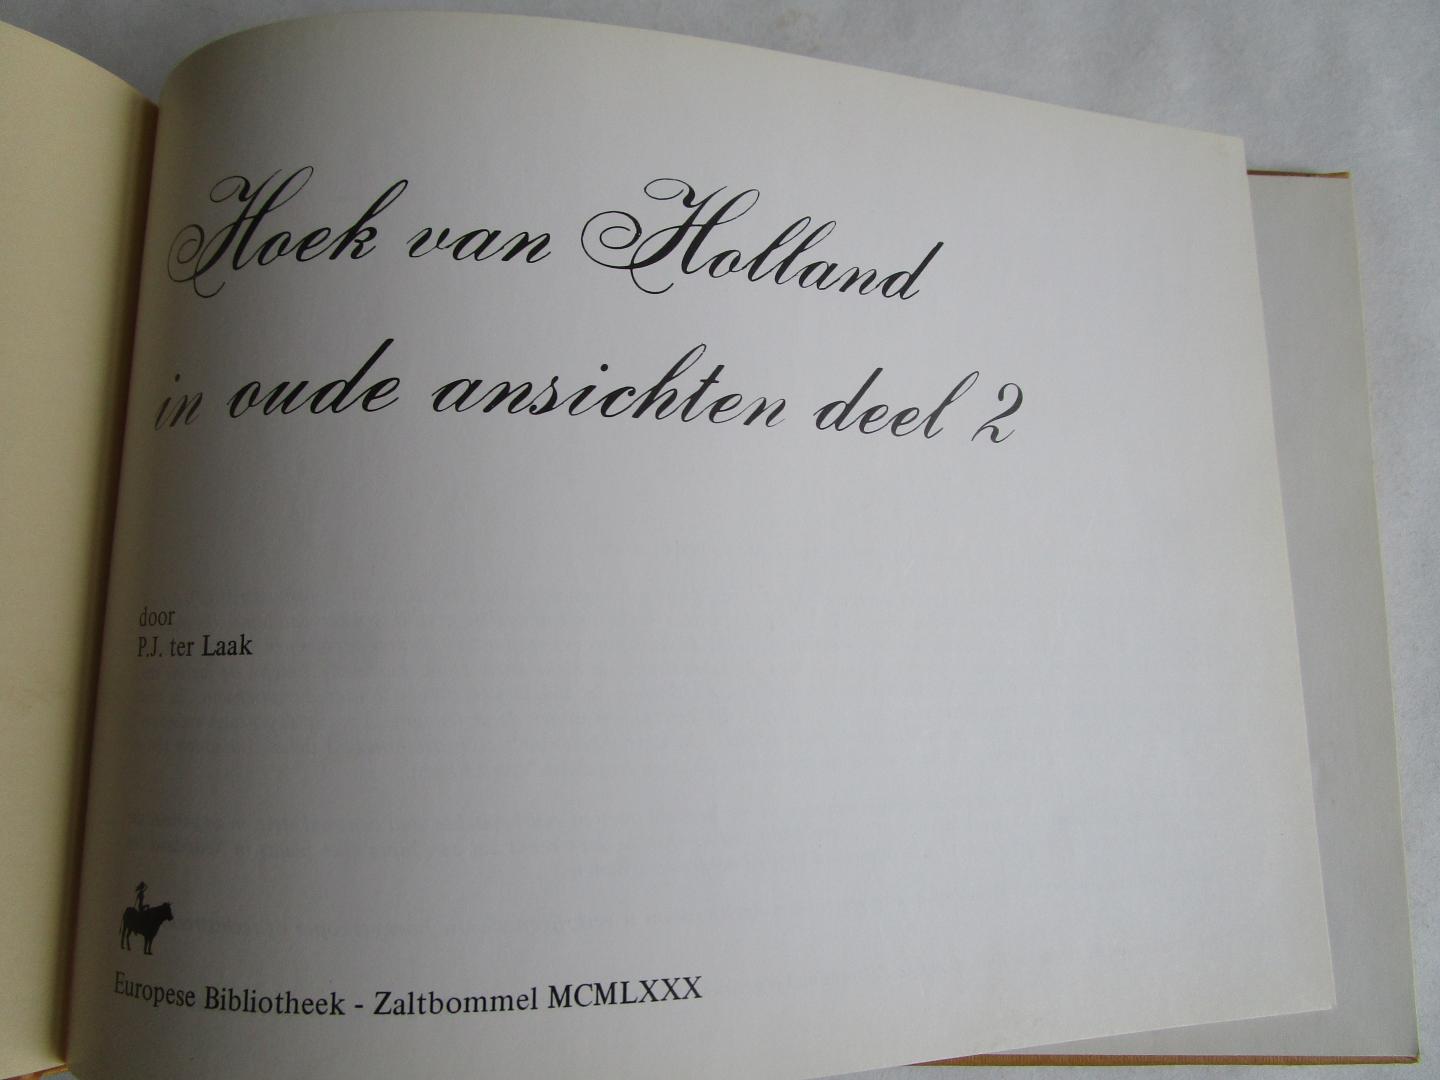 Laak, P.J. ter - Hoek van Holand in oude ansichten; TWEE DELEN; resp. In oude ansichten (deel 1 ?)  en In oude ansichten deel 2; fbeide fraaie otoboekjes